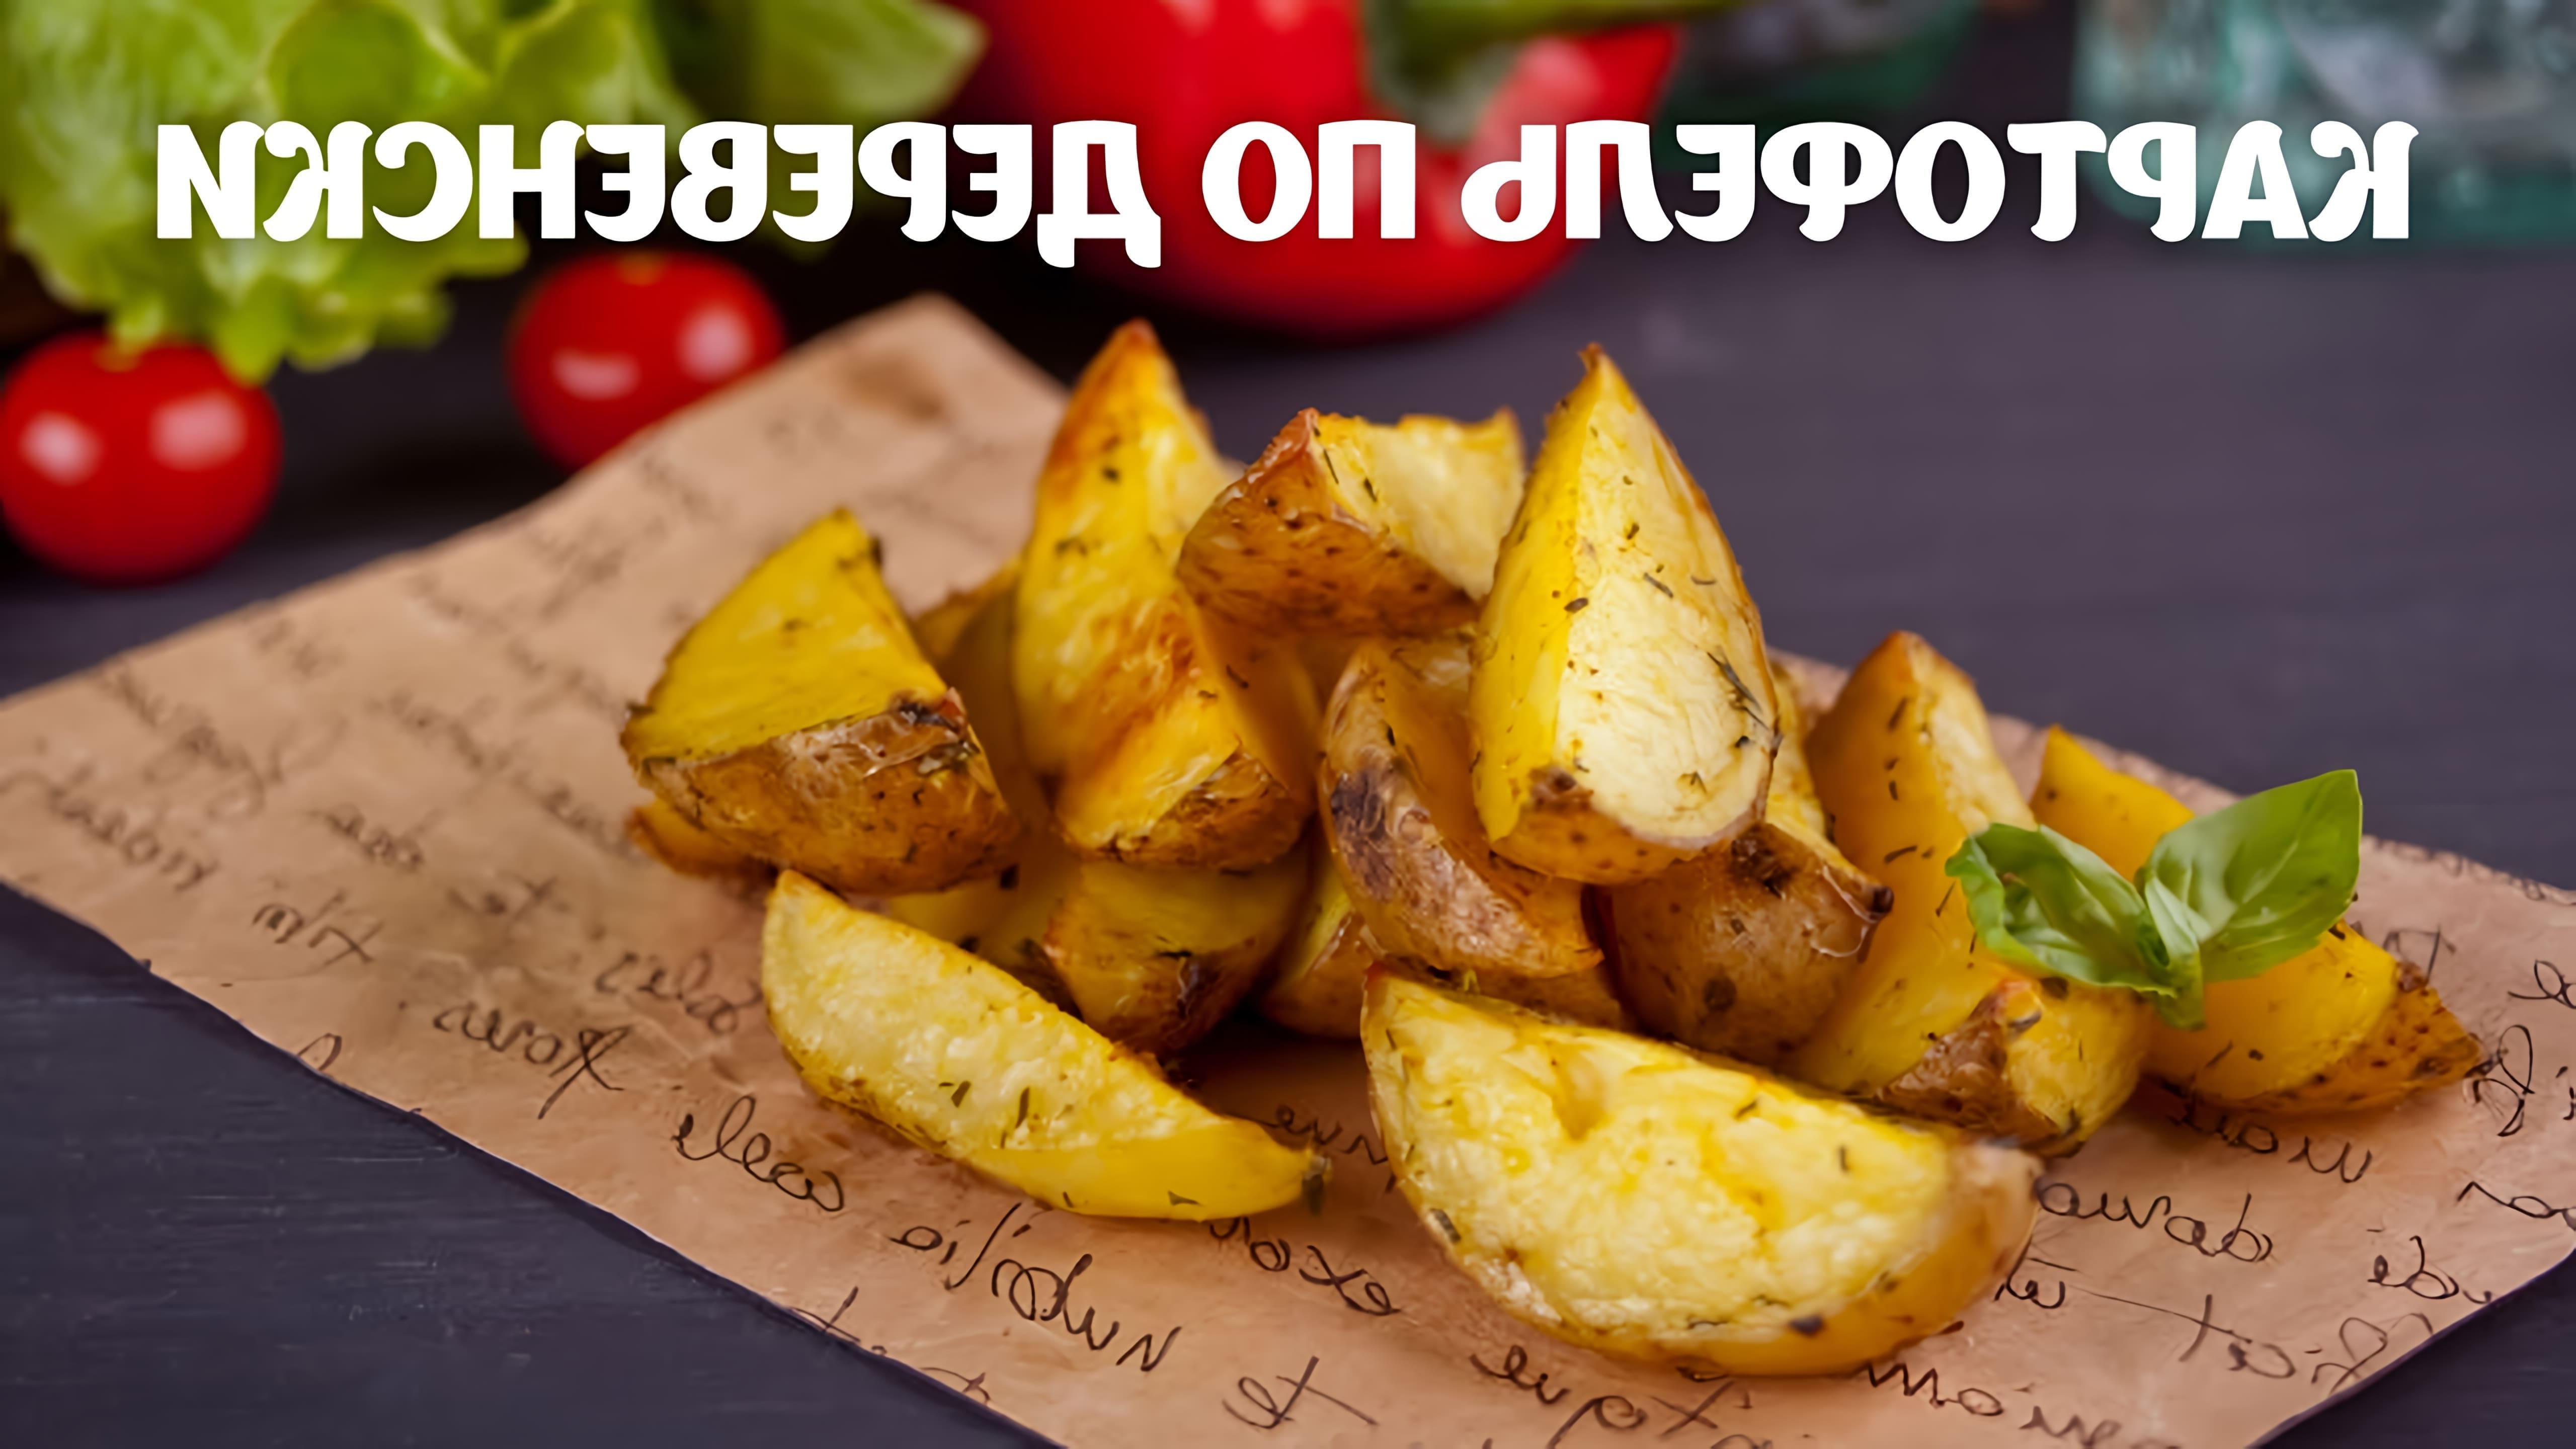 В данном видео-ролике будет представлен простой и быстрый рецепт приготовления картофеля по-деревенски